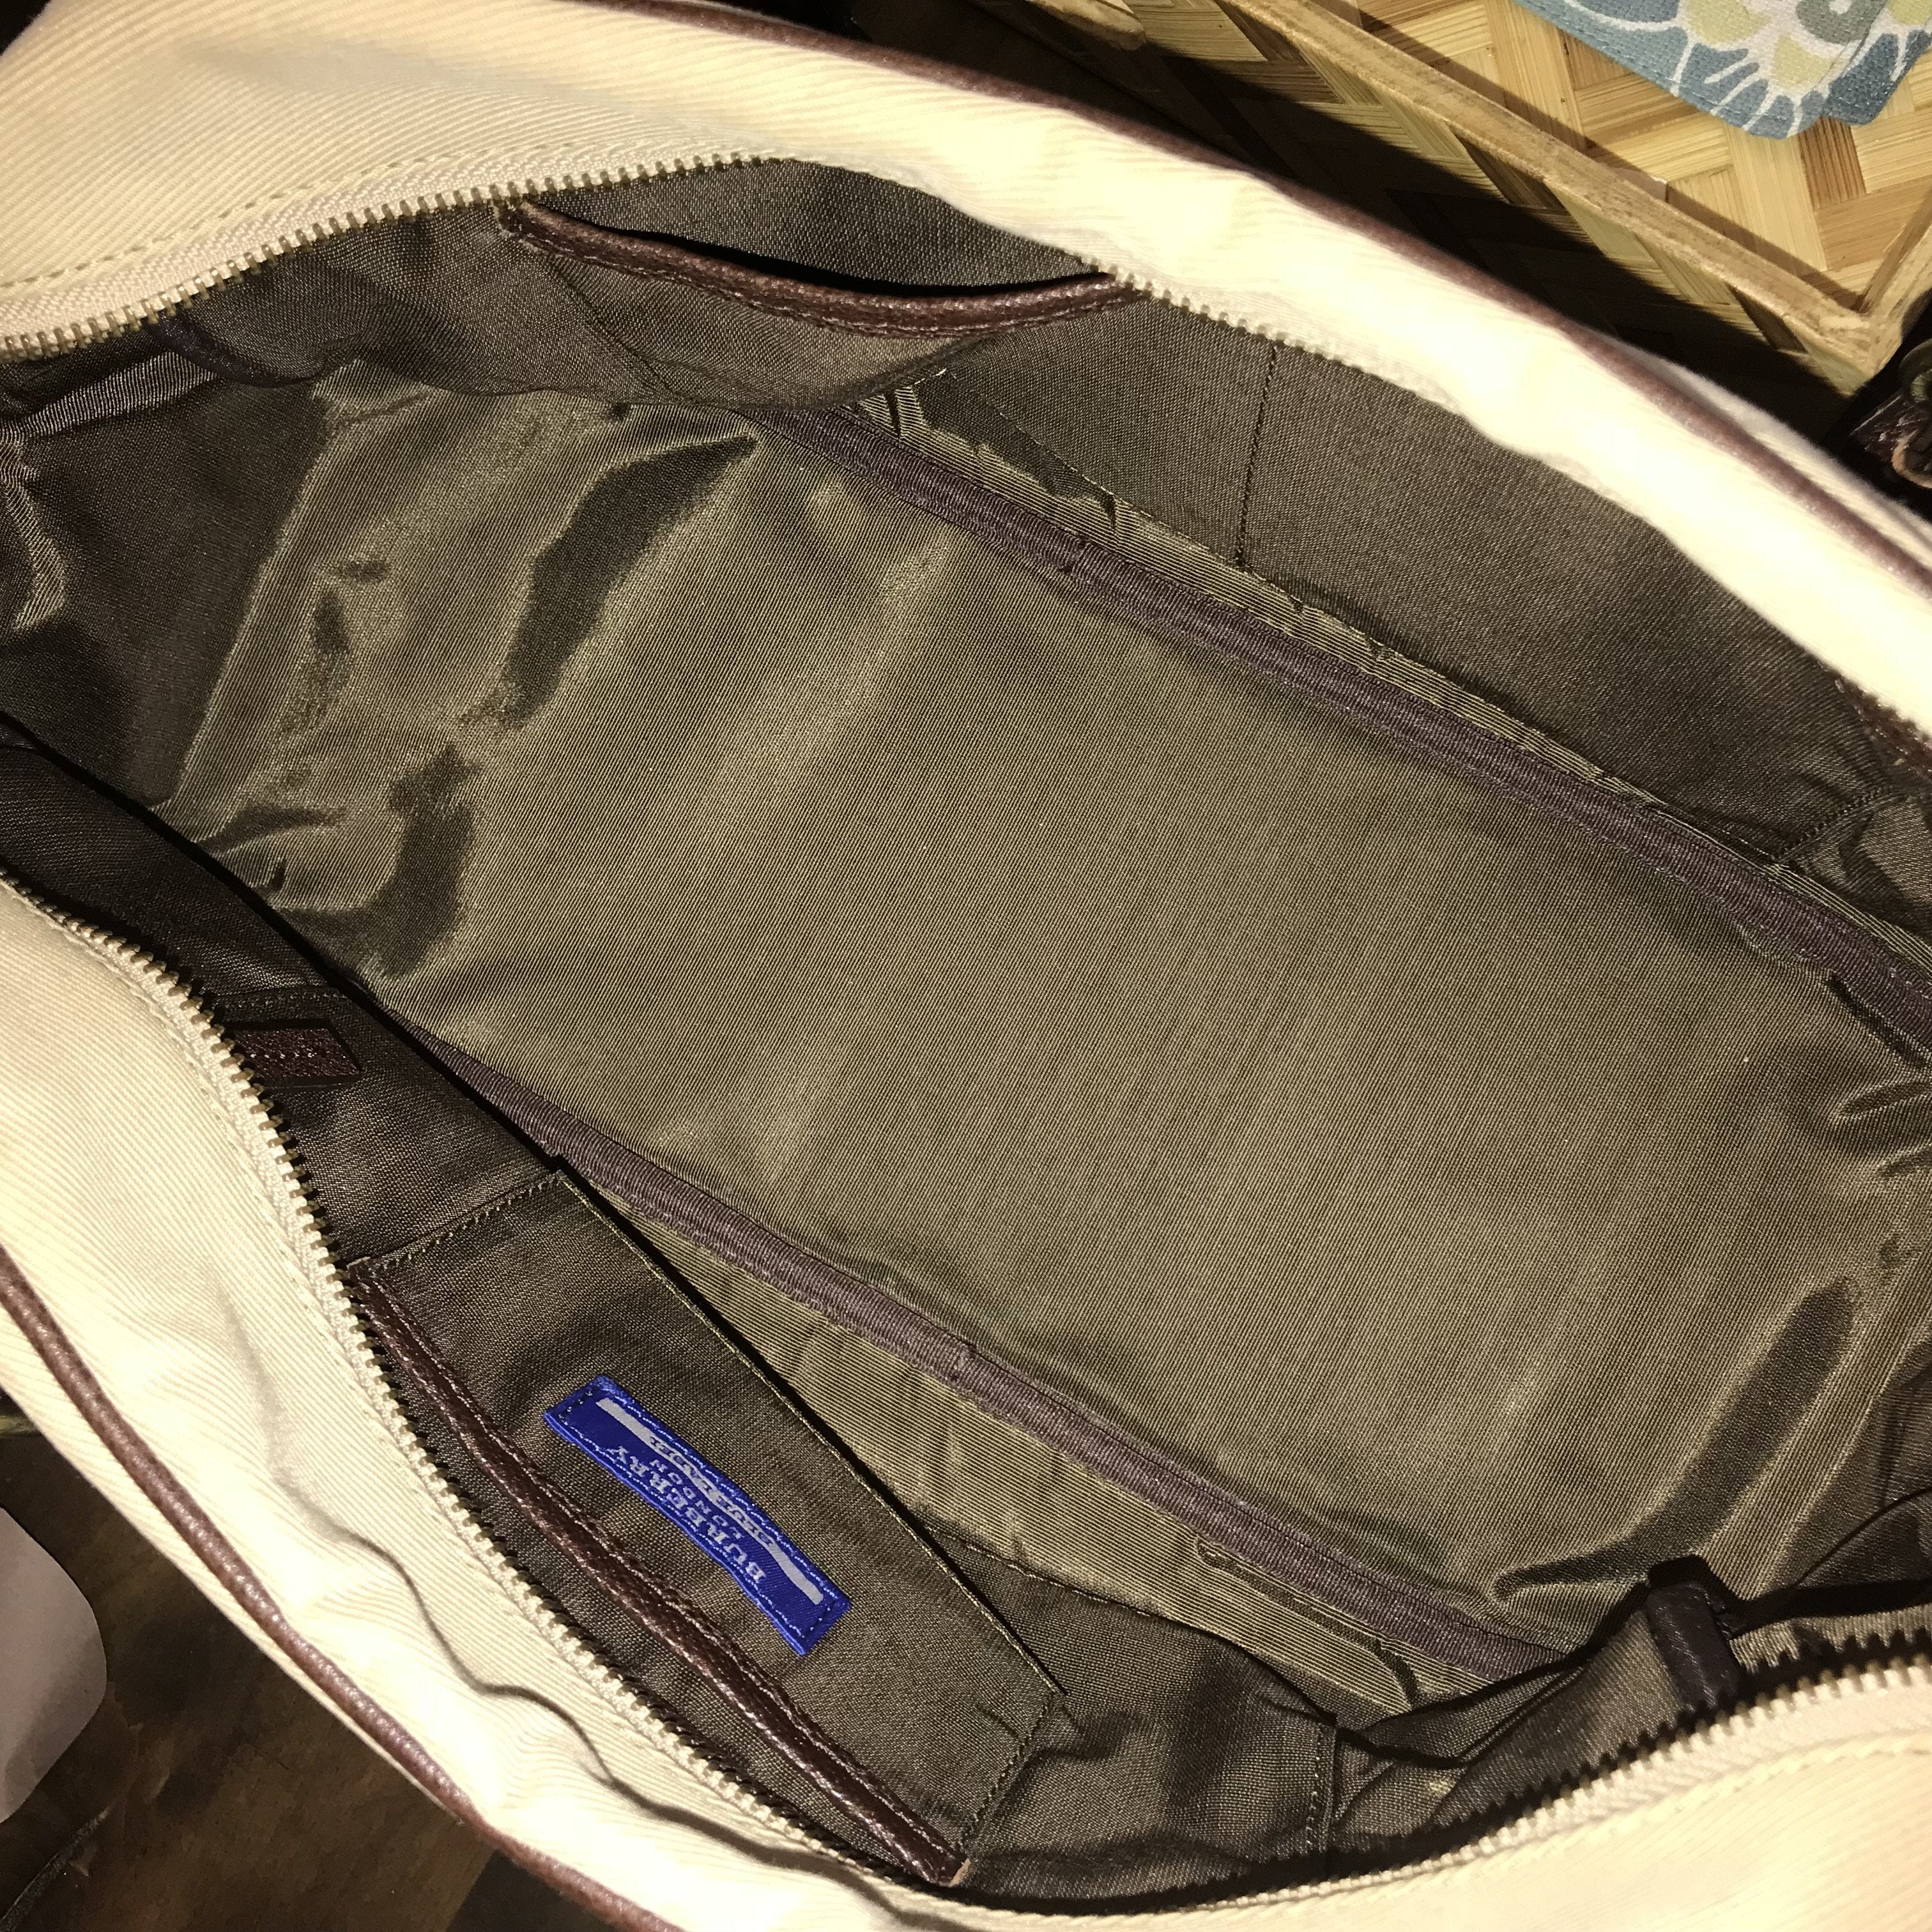 BURBERRY ( blue label ) sling / shoulder bag